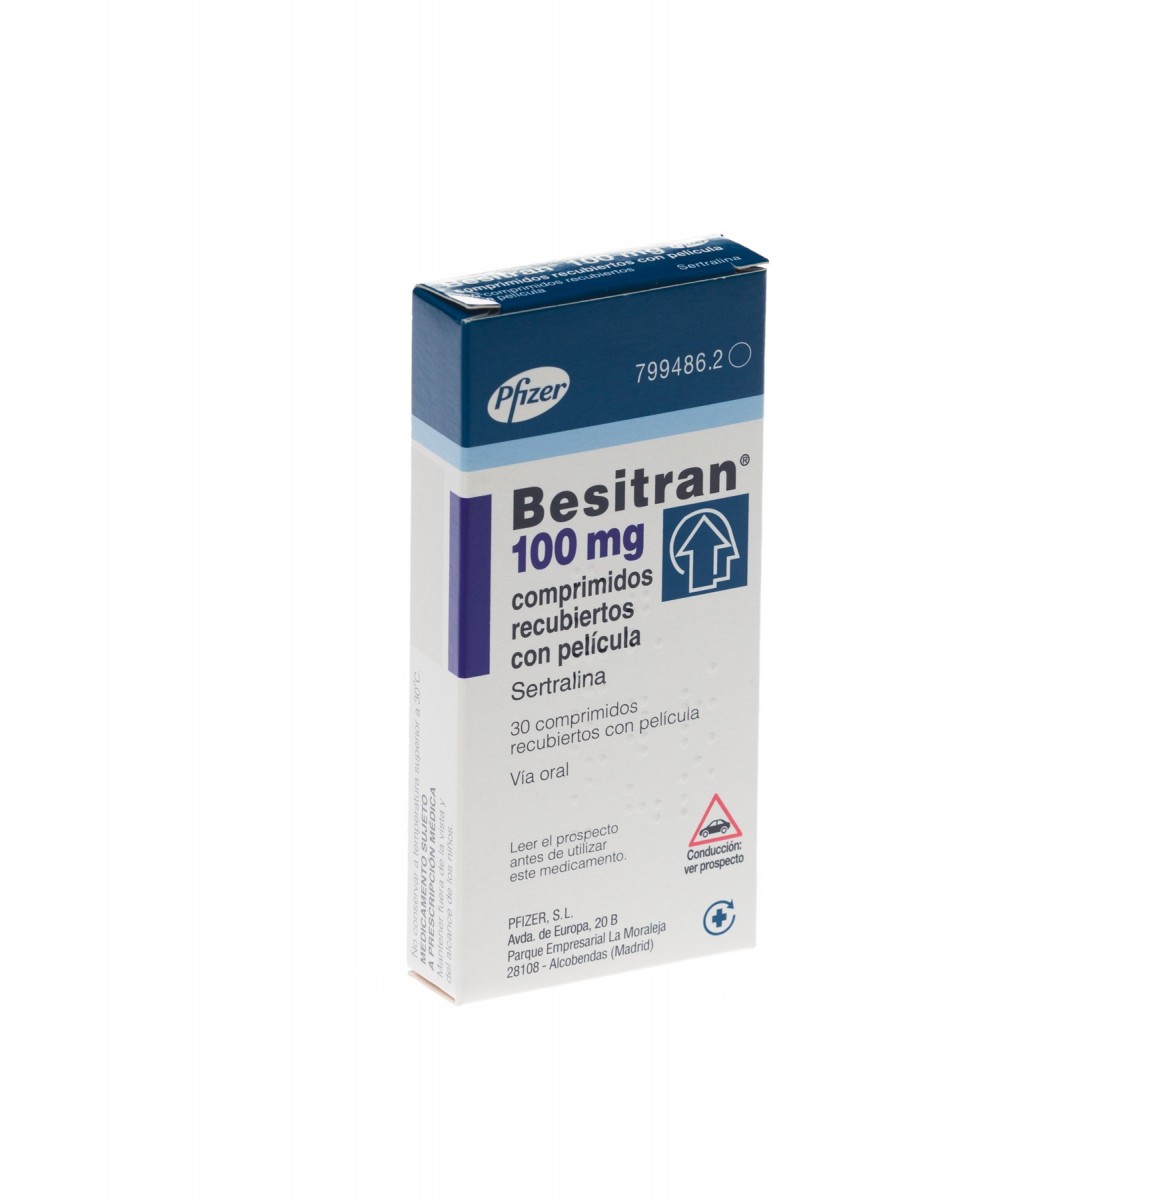 BESITRAN 100 mg COMPRIMIDOS RECUBIERTOS CON PELICULA, 500 comprimidos fotografía del envase.